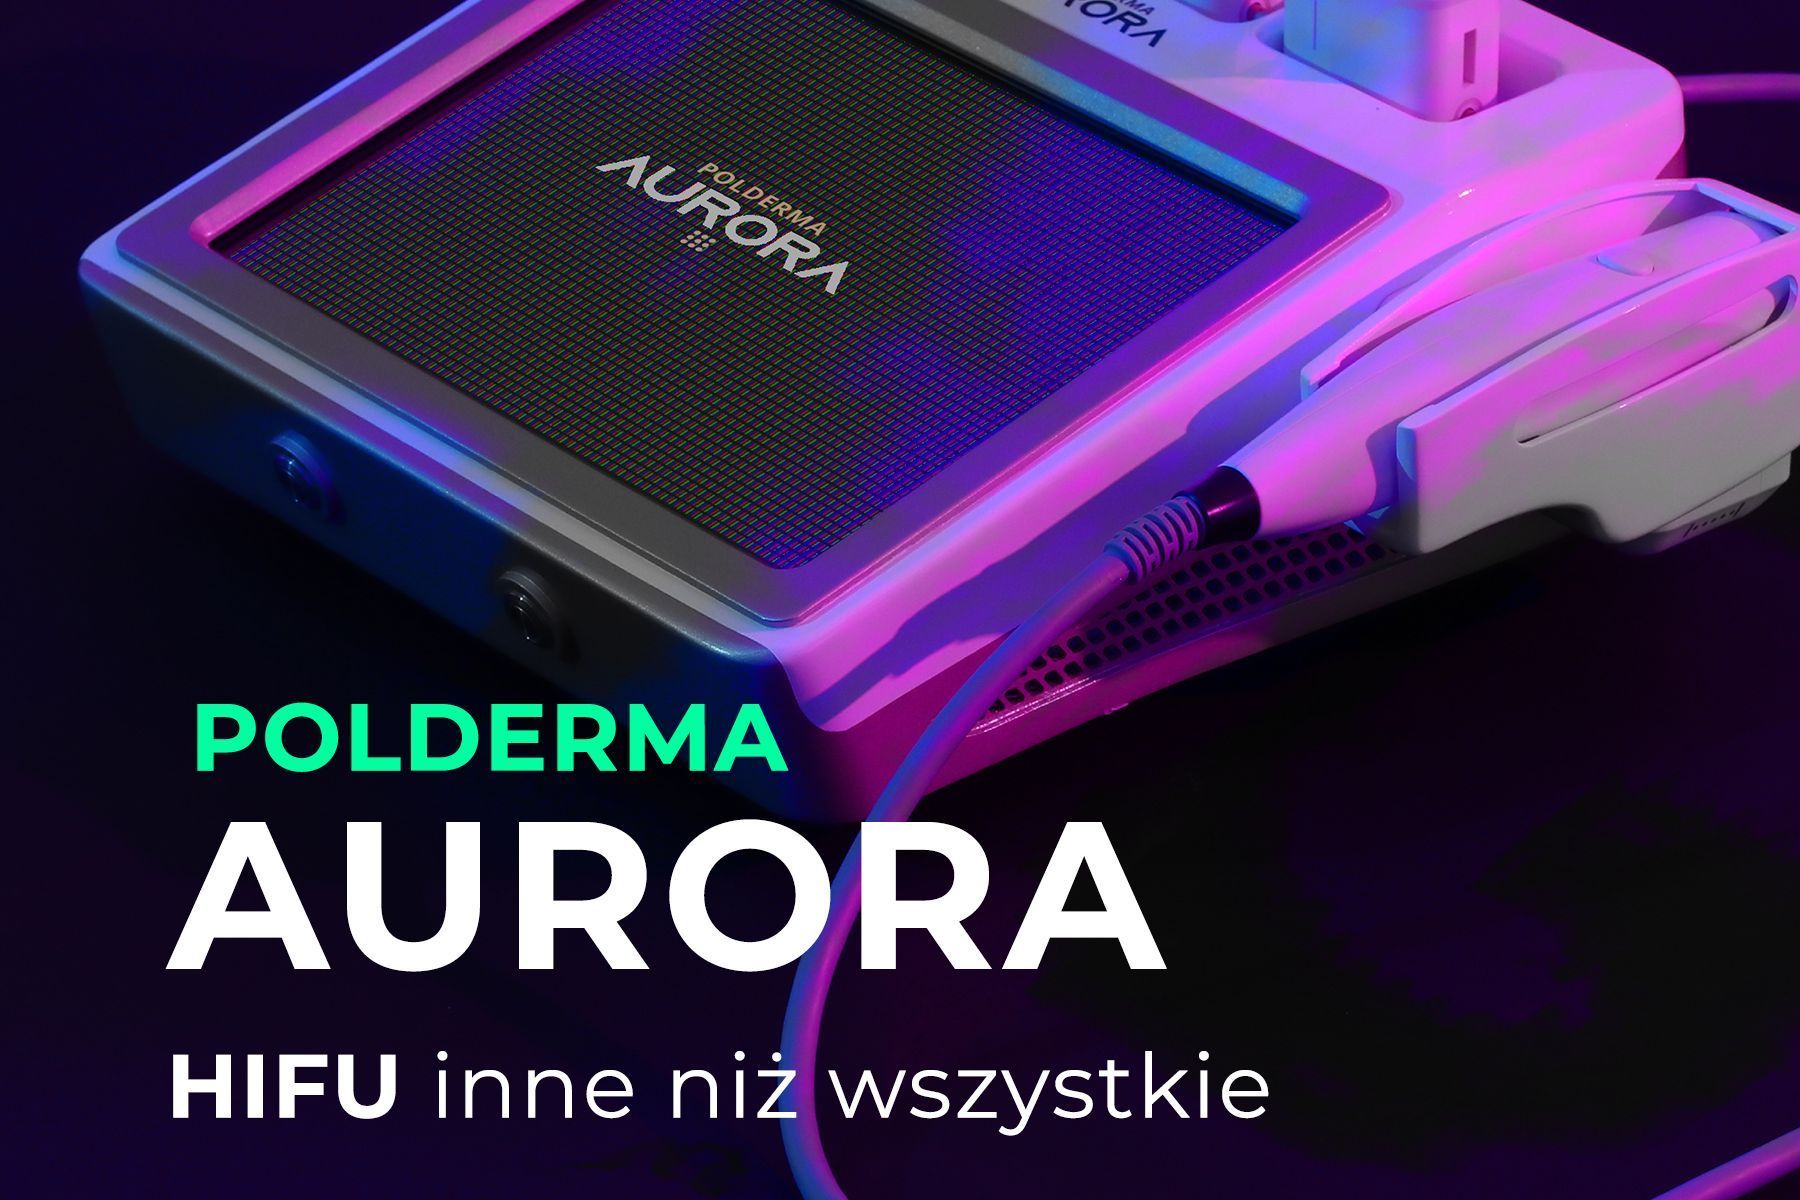 Portfolio usługi Hifu Aurora 3D cała twarz i szyja i podbródek